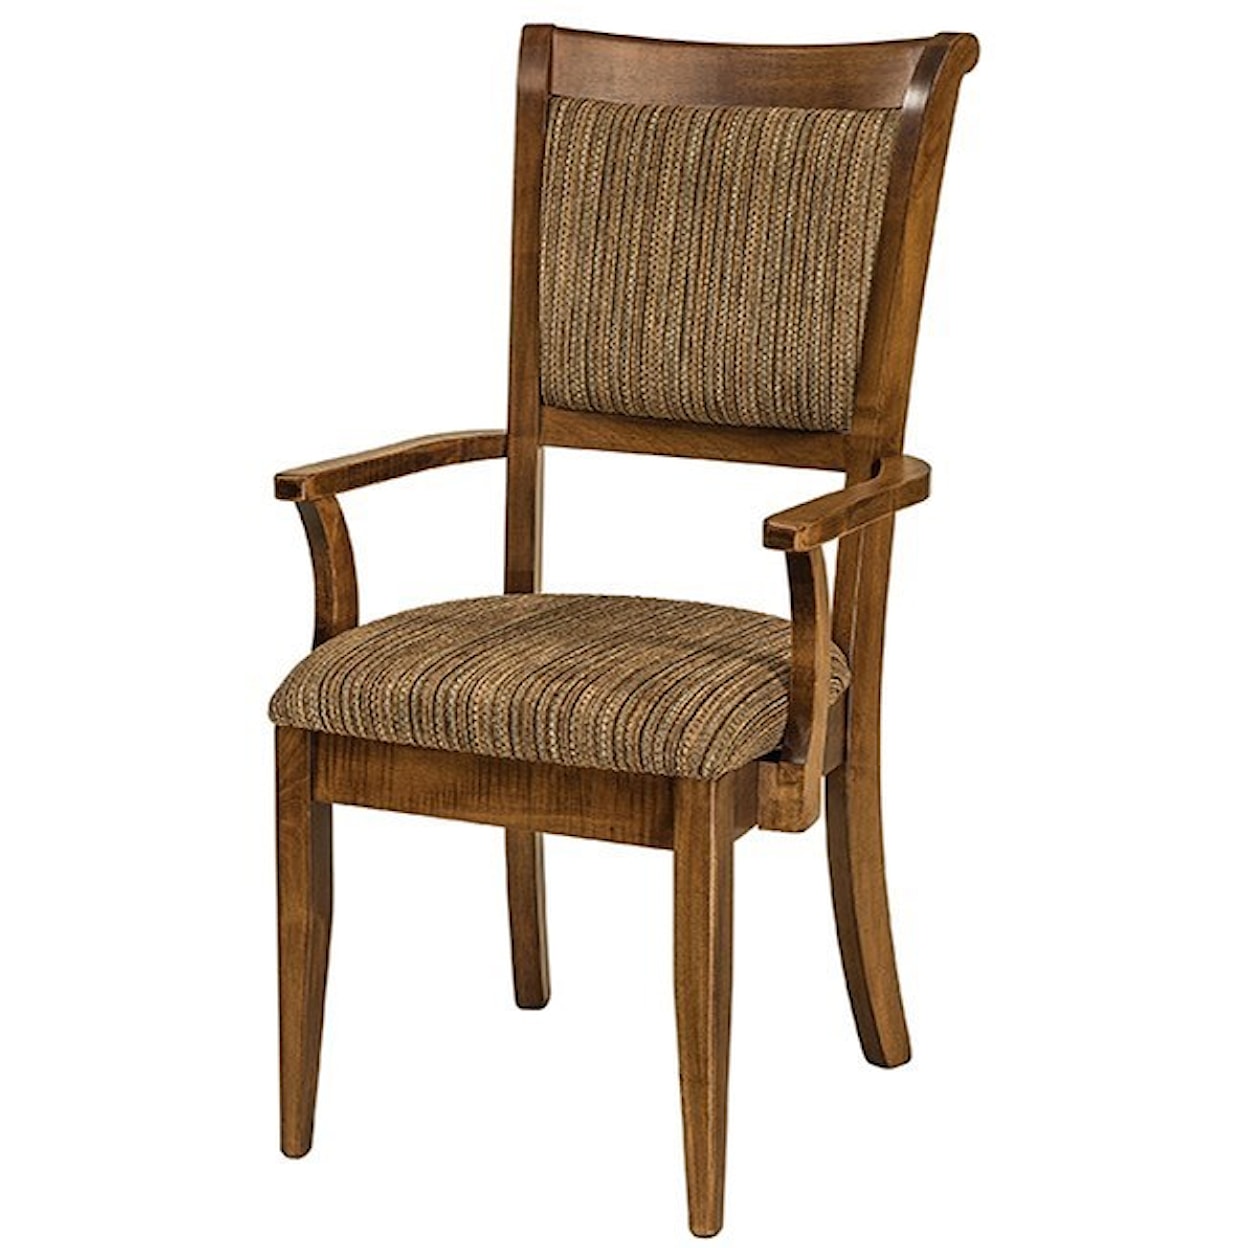 F&N Woodworking Adair Arm Chair